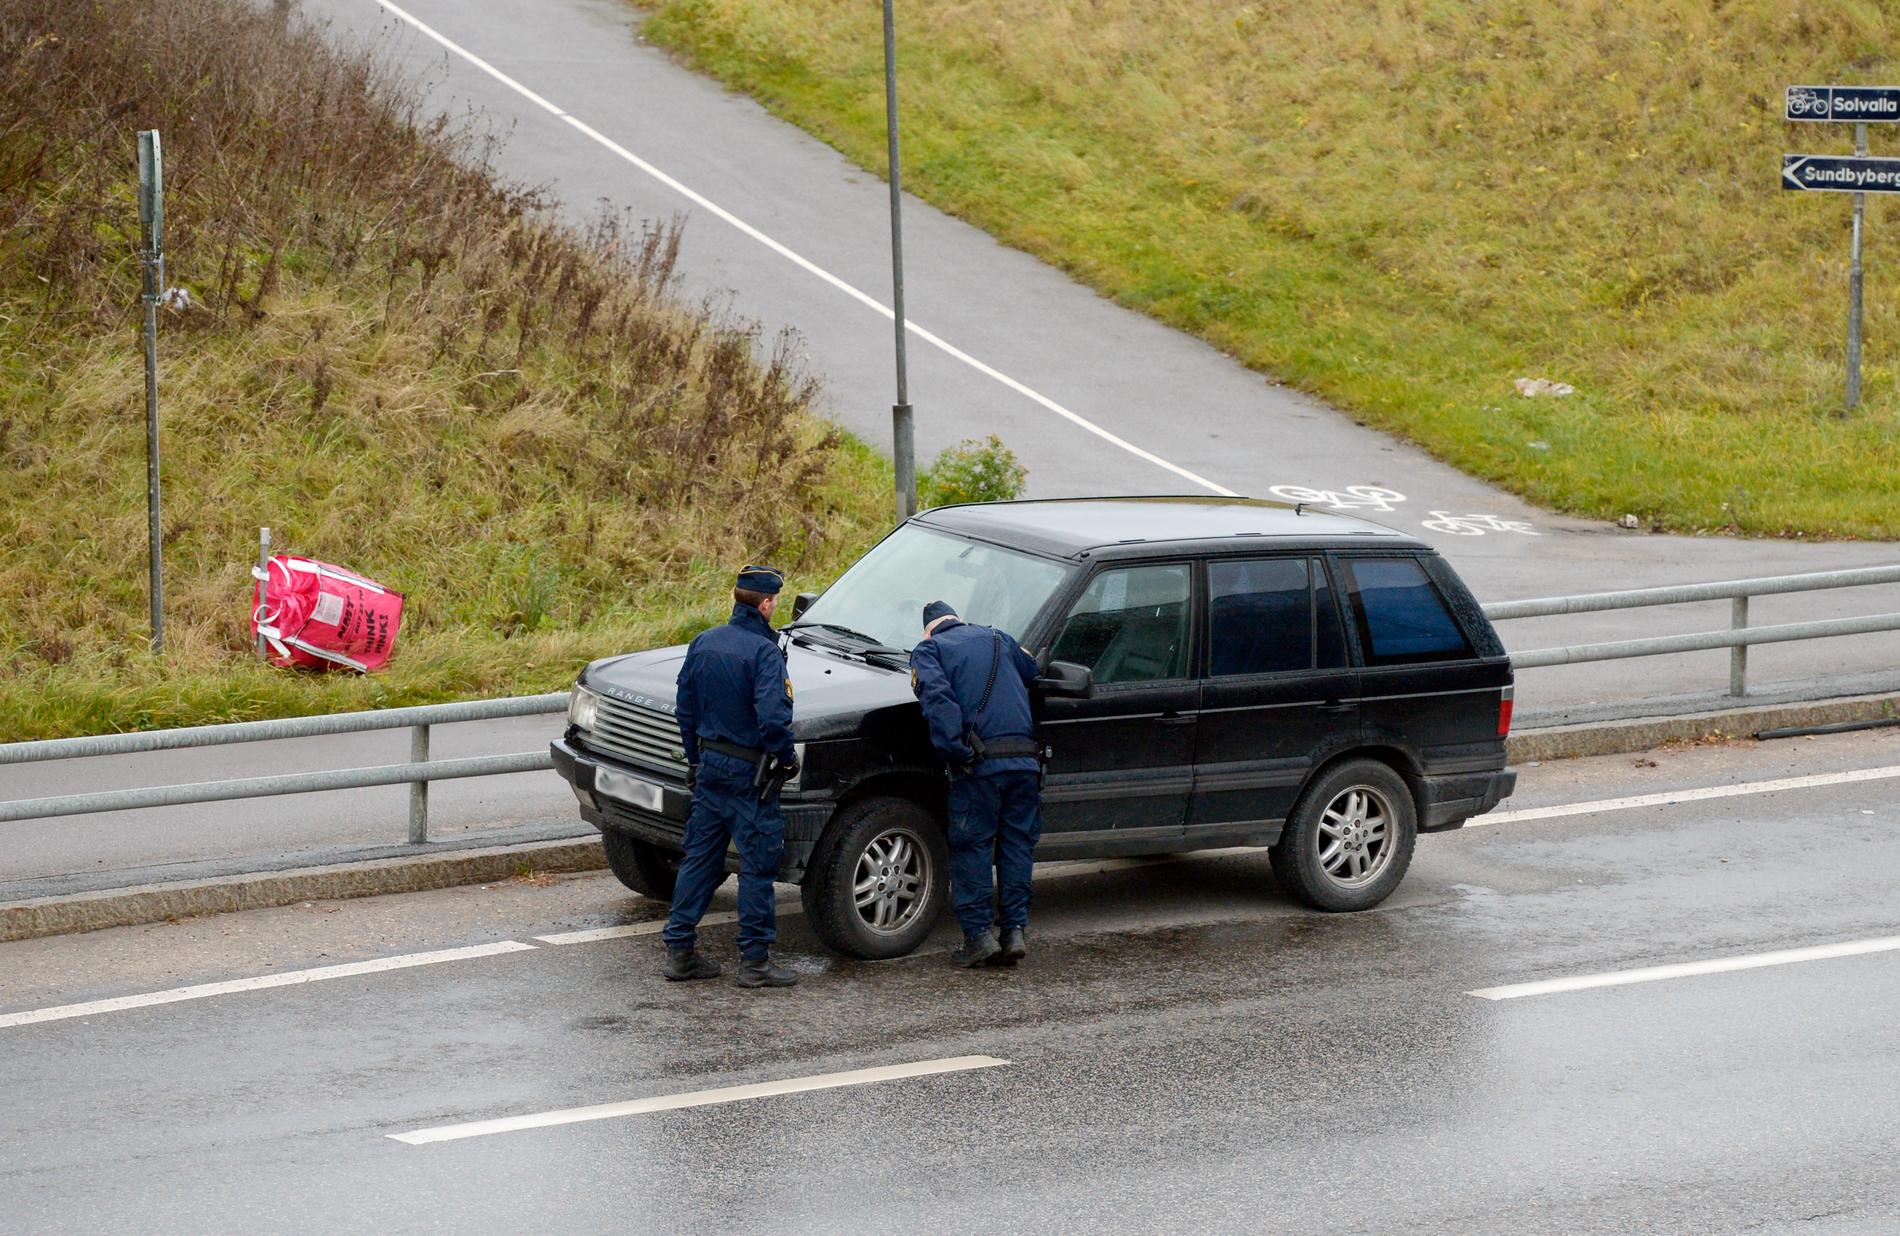 En misstänkt bil, en mörk Range Rover med utländska skyltar, står parkerad alldeles intill staketet.